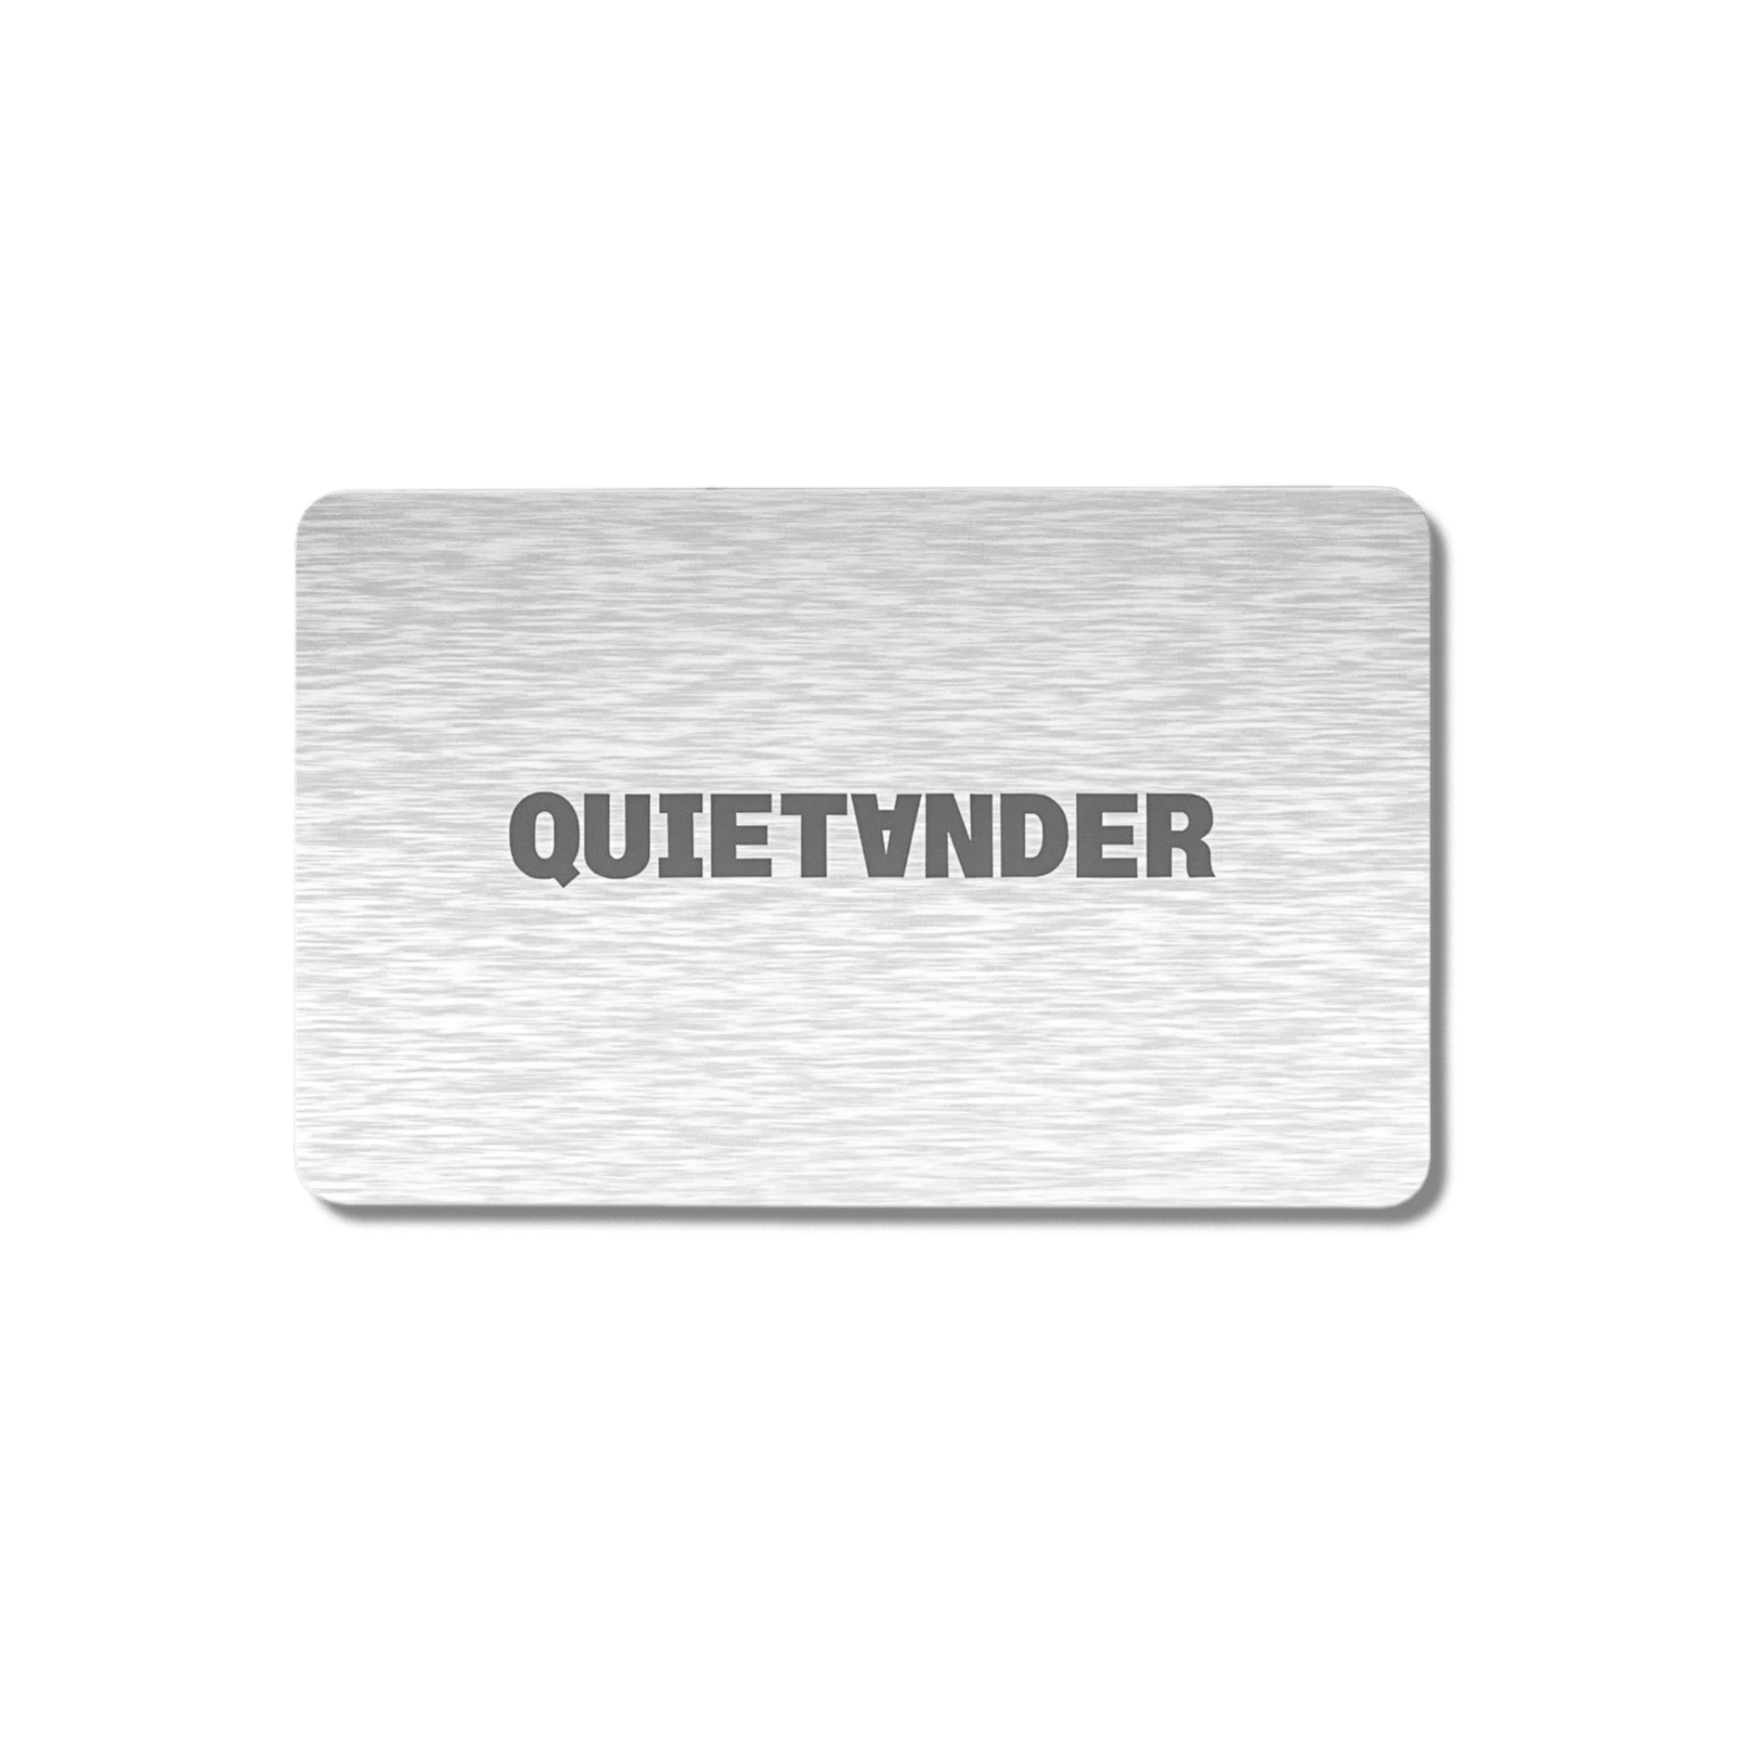 QUIET ANDER GIFT CARD - Quiet AnderQuiet Ander